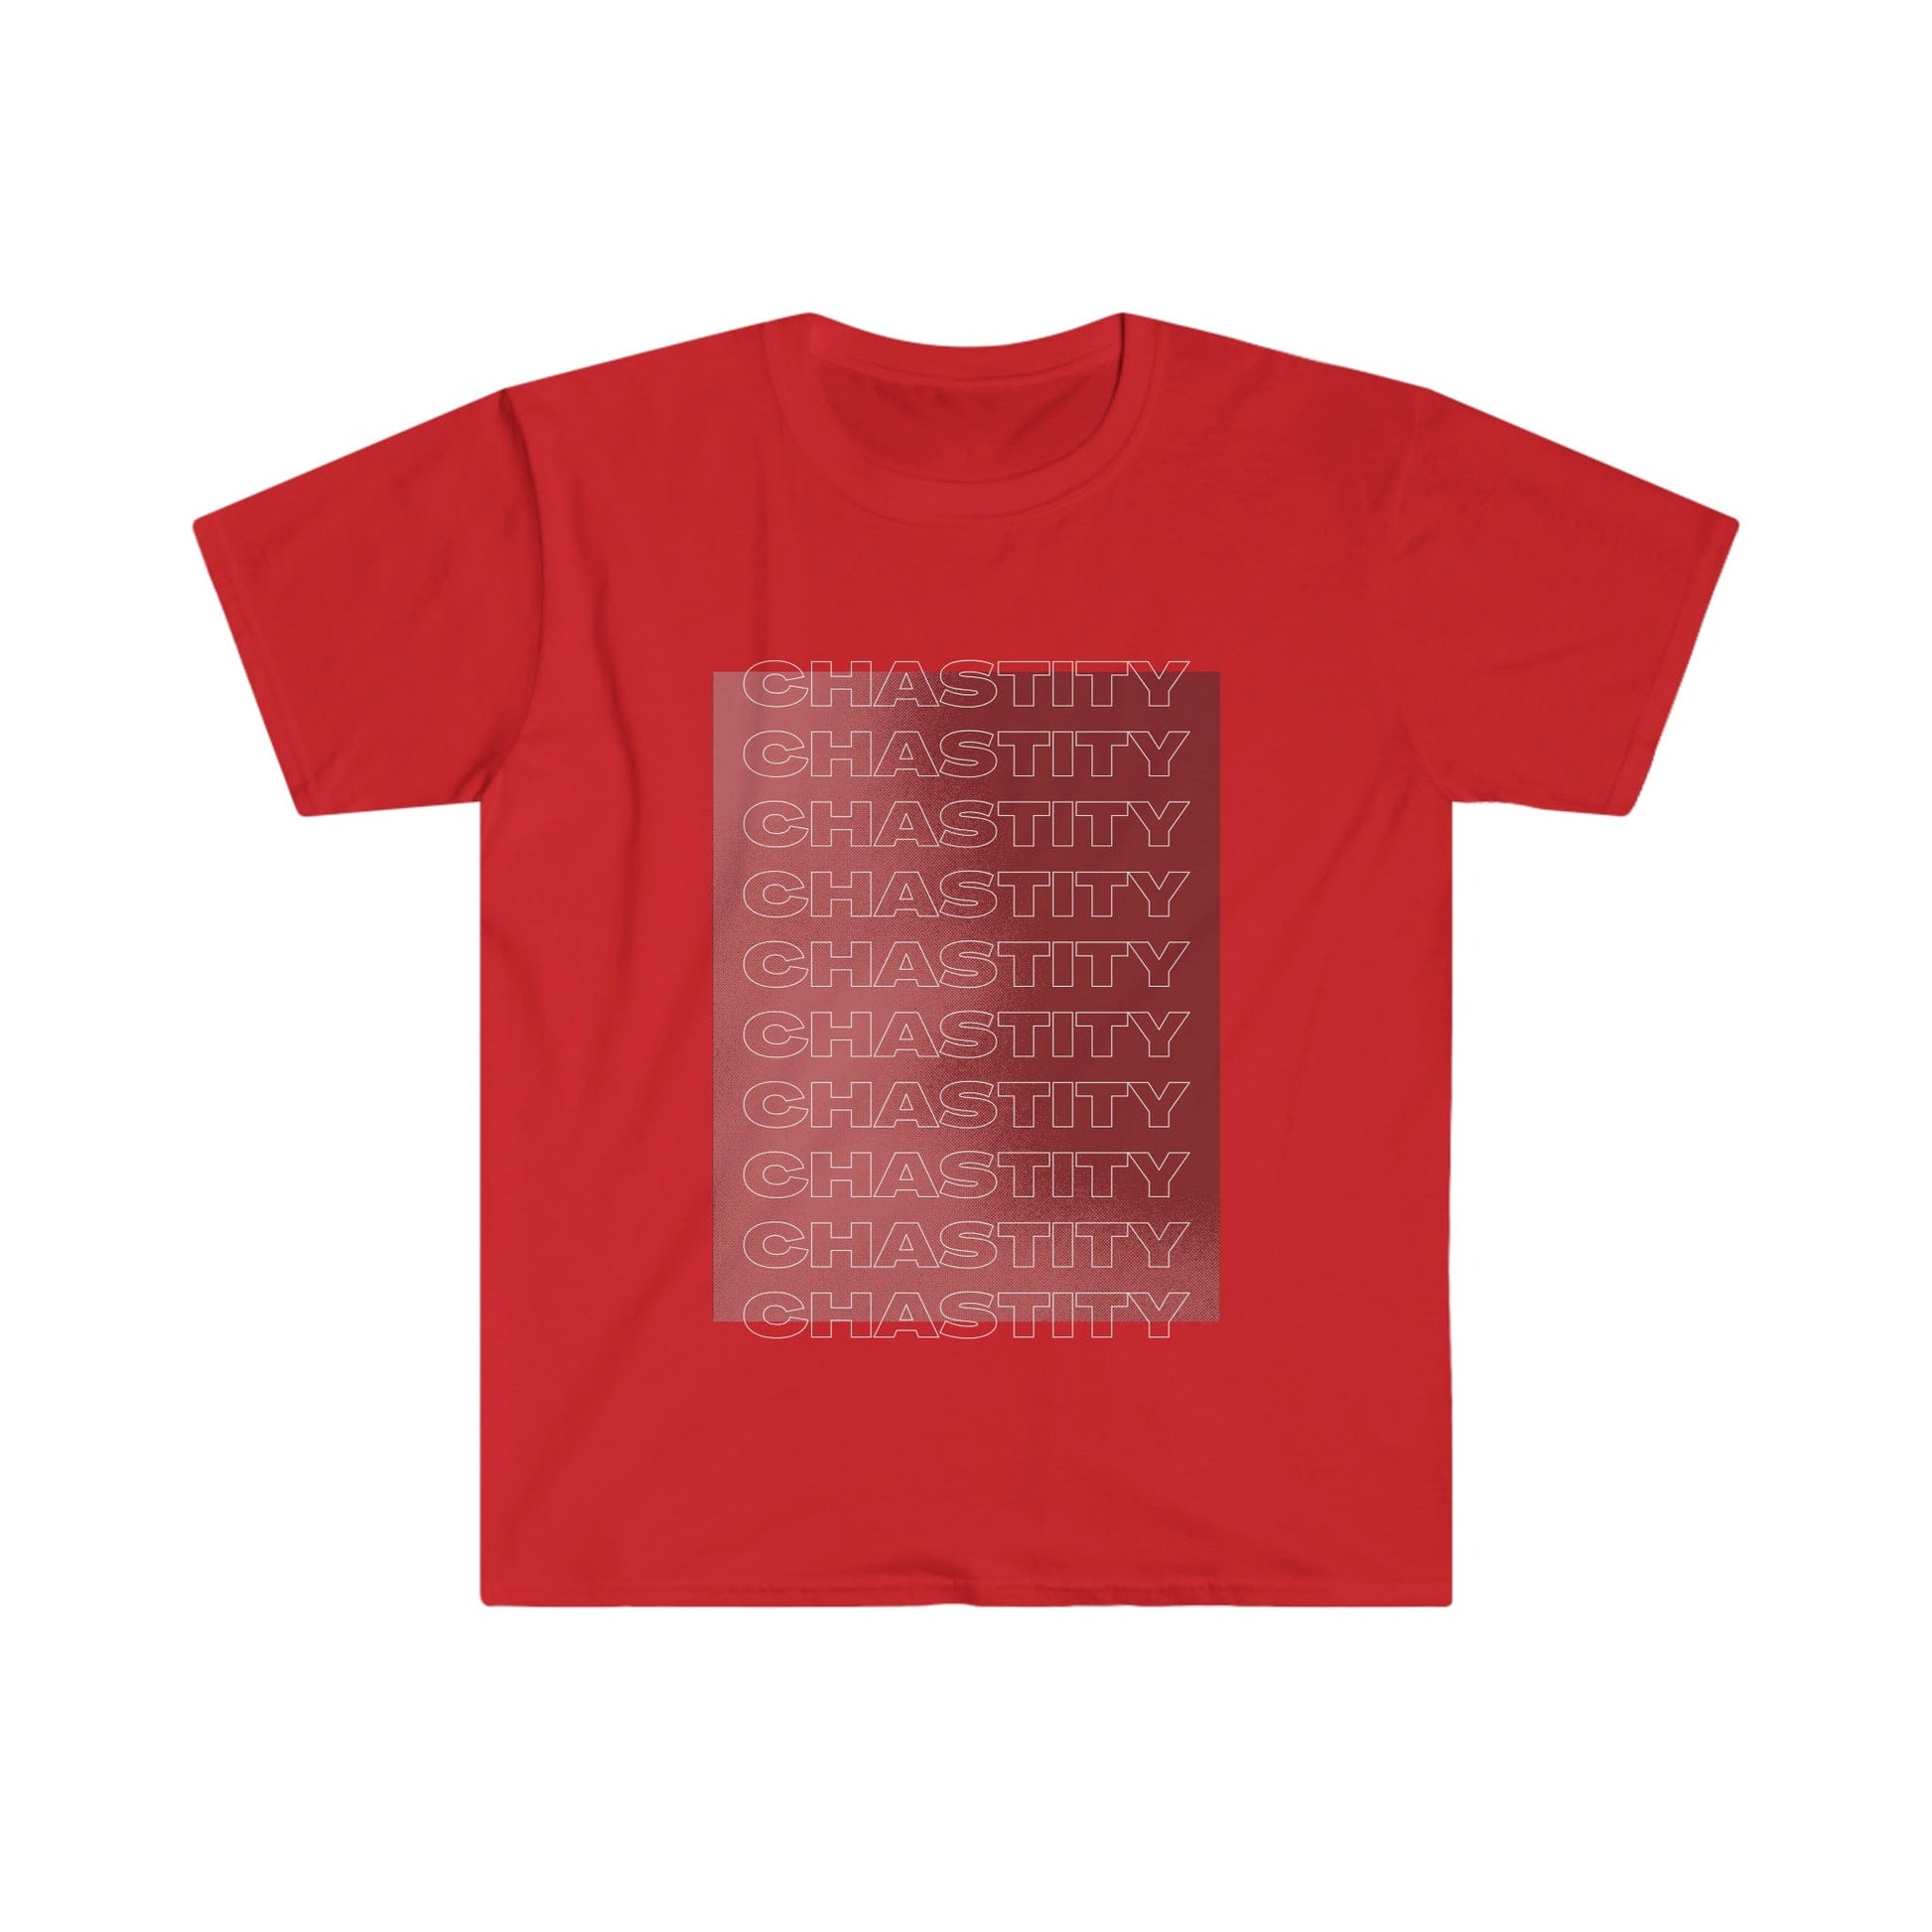 T-Shirt Red / S Chastity x 10 -Chastity Shirts by LockedBoy Athletics LEATHERDADDY BATOR